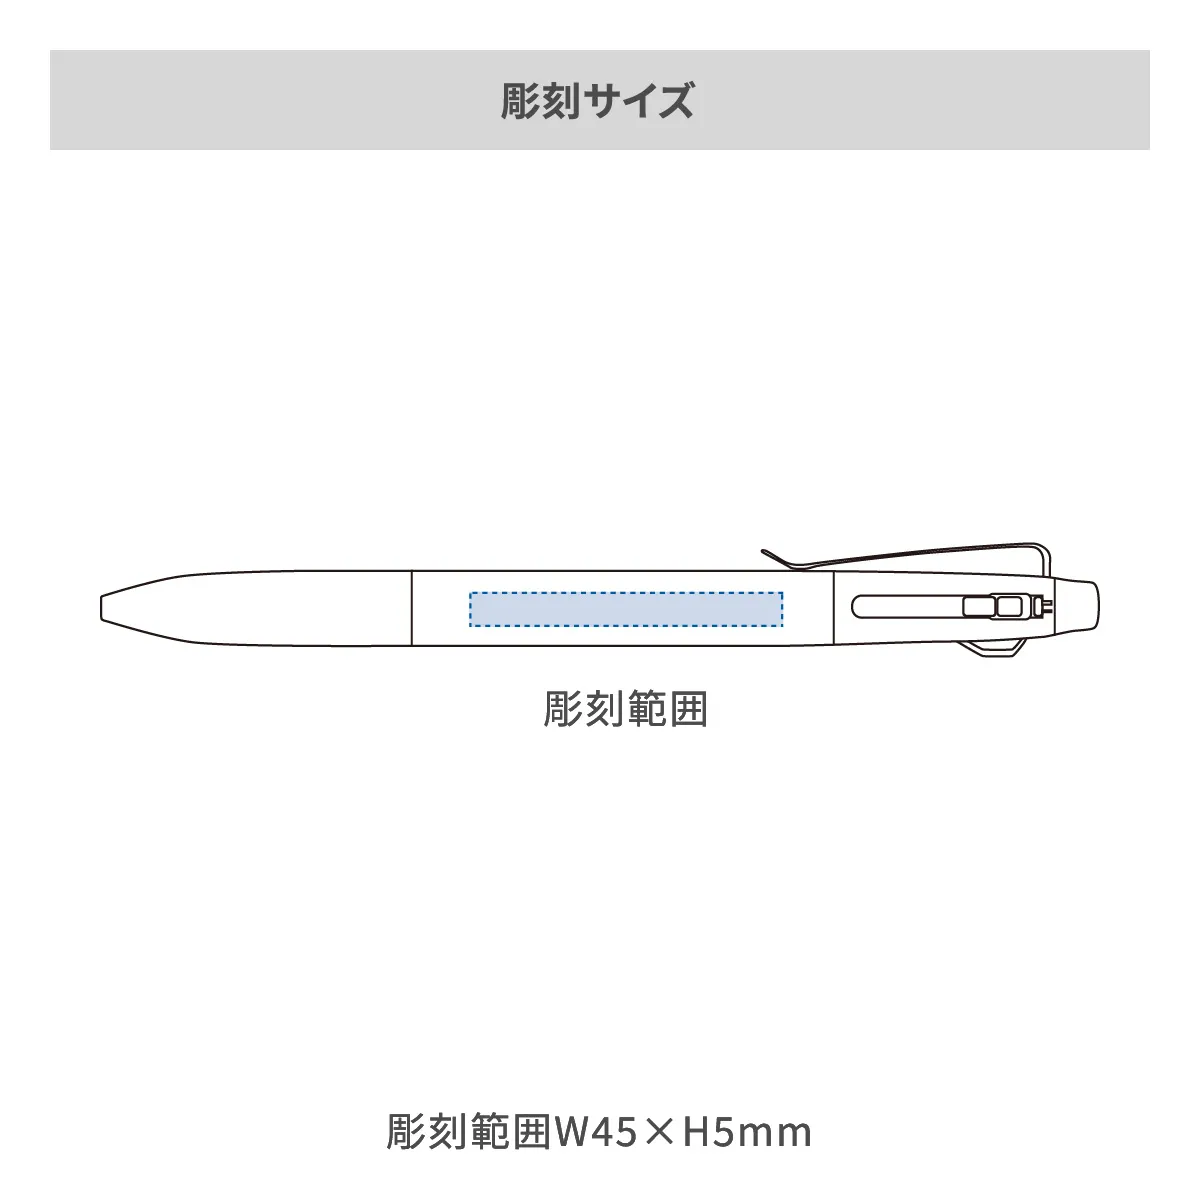 【短納期】三菱鉛筆 ジェットストリーム プライム 3色ボールペン 0.5mm【名入れボールペン / レーザー彫刻】 画像2